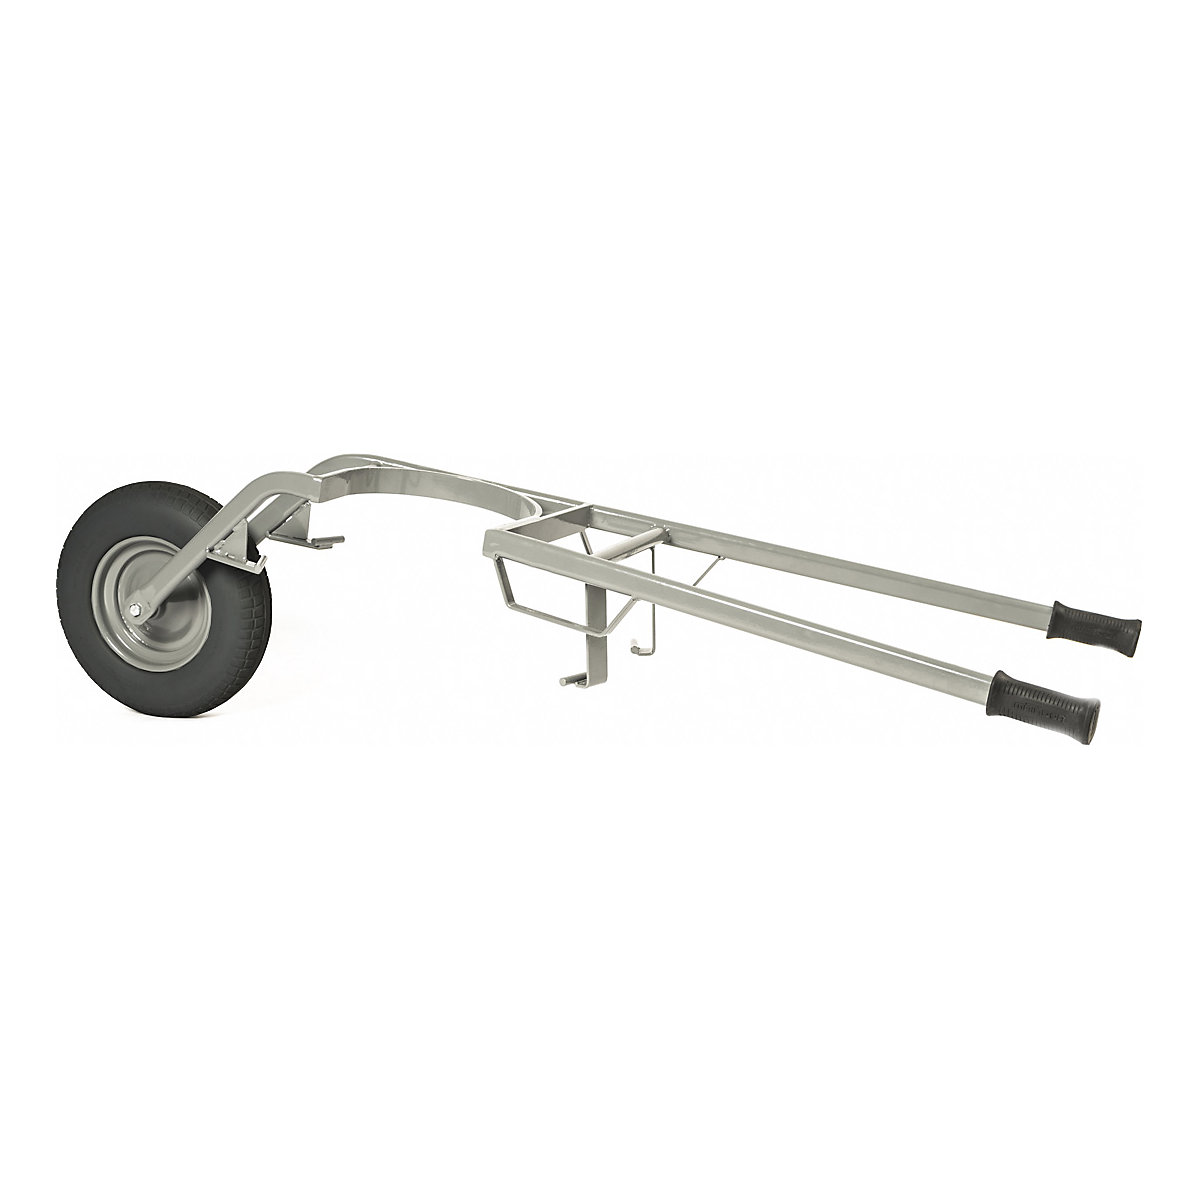 Mortar tub wheel barrow – MATADOR, max. load 250 kg, pneumatic tyres-1